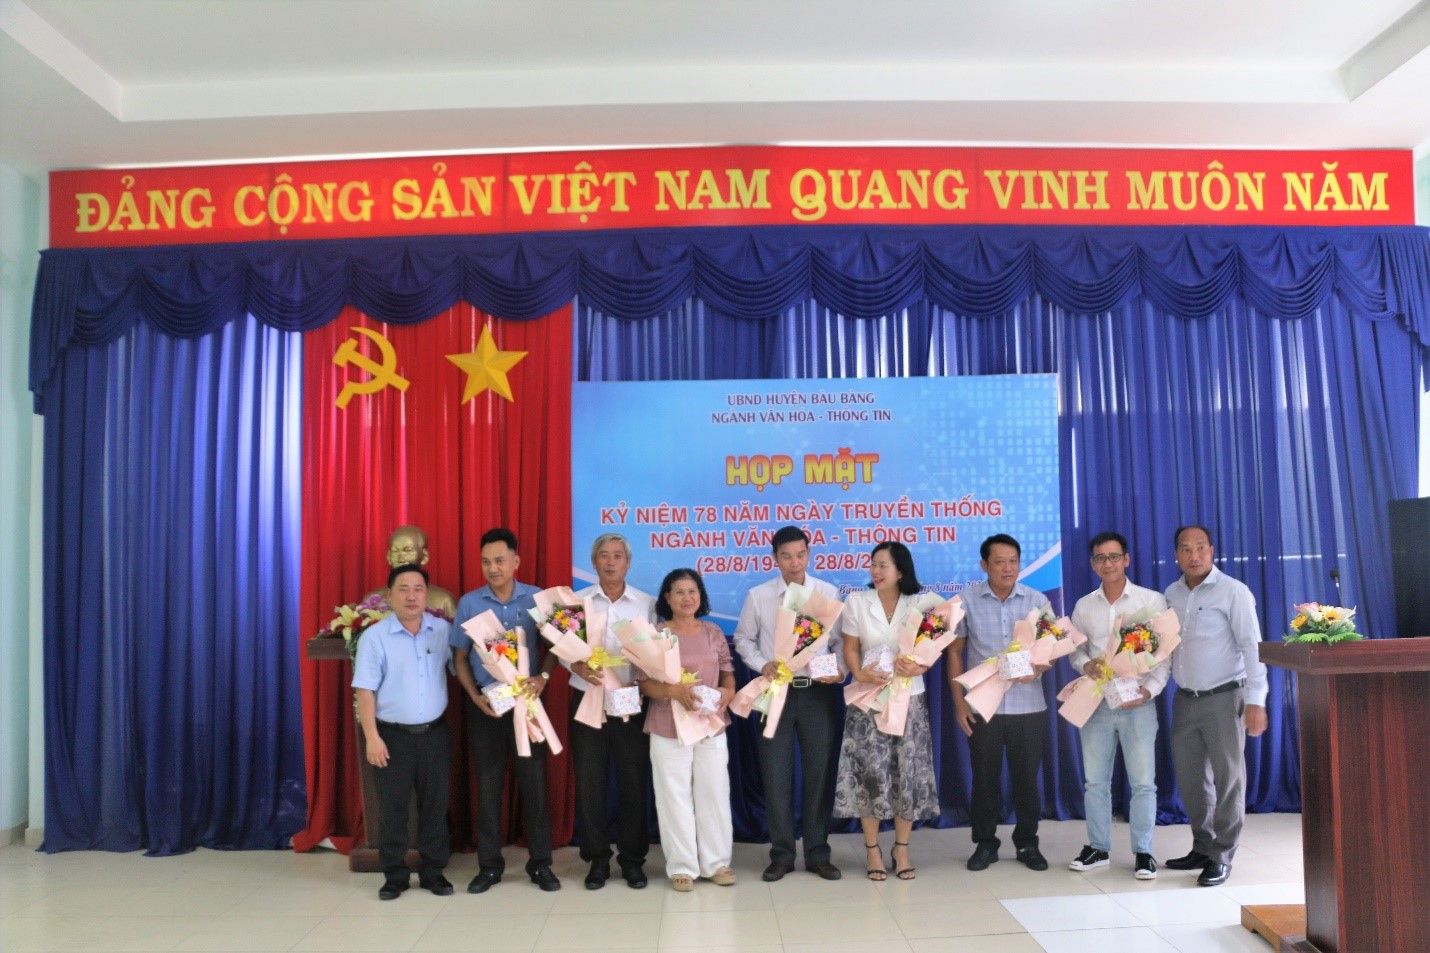 Ngành Văn hóa - Thông tin huyện Bàu Bàng tổ chức Họp mặt kỷ miệm 78 năm Ngày truyền thống ngành Văn hóa - Thông tin (28/8/1945 - 28/8/2023).